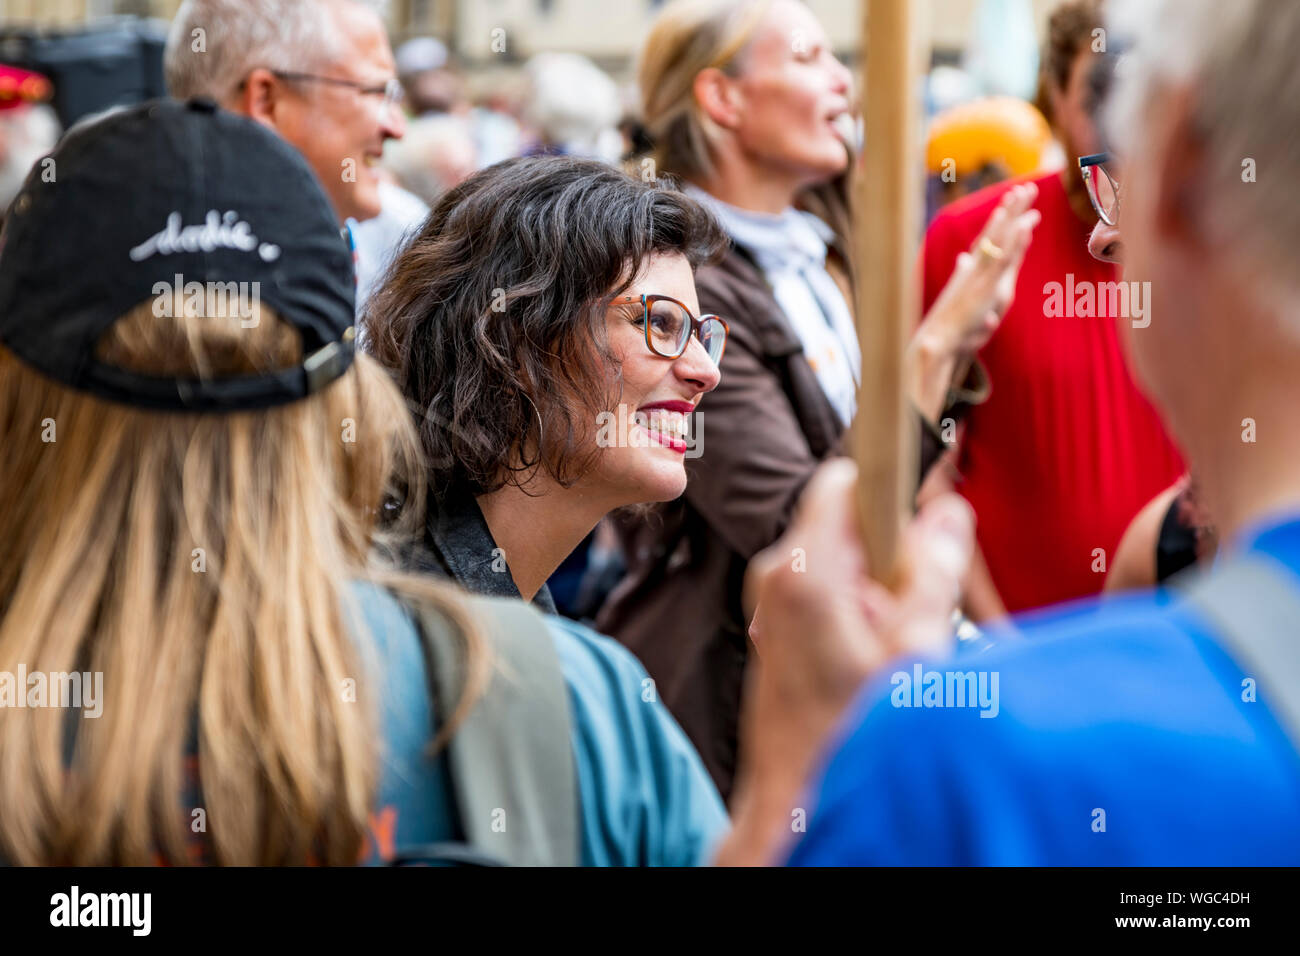 Parar el golpe- Layla Moran MP, Partido Liberal Demócrata. Hablando a los manifestantes que protestaban contra la proroguing del parlamento por Boris Jonhson PM. Foto de stock